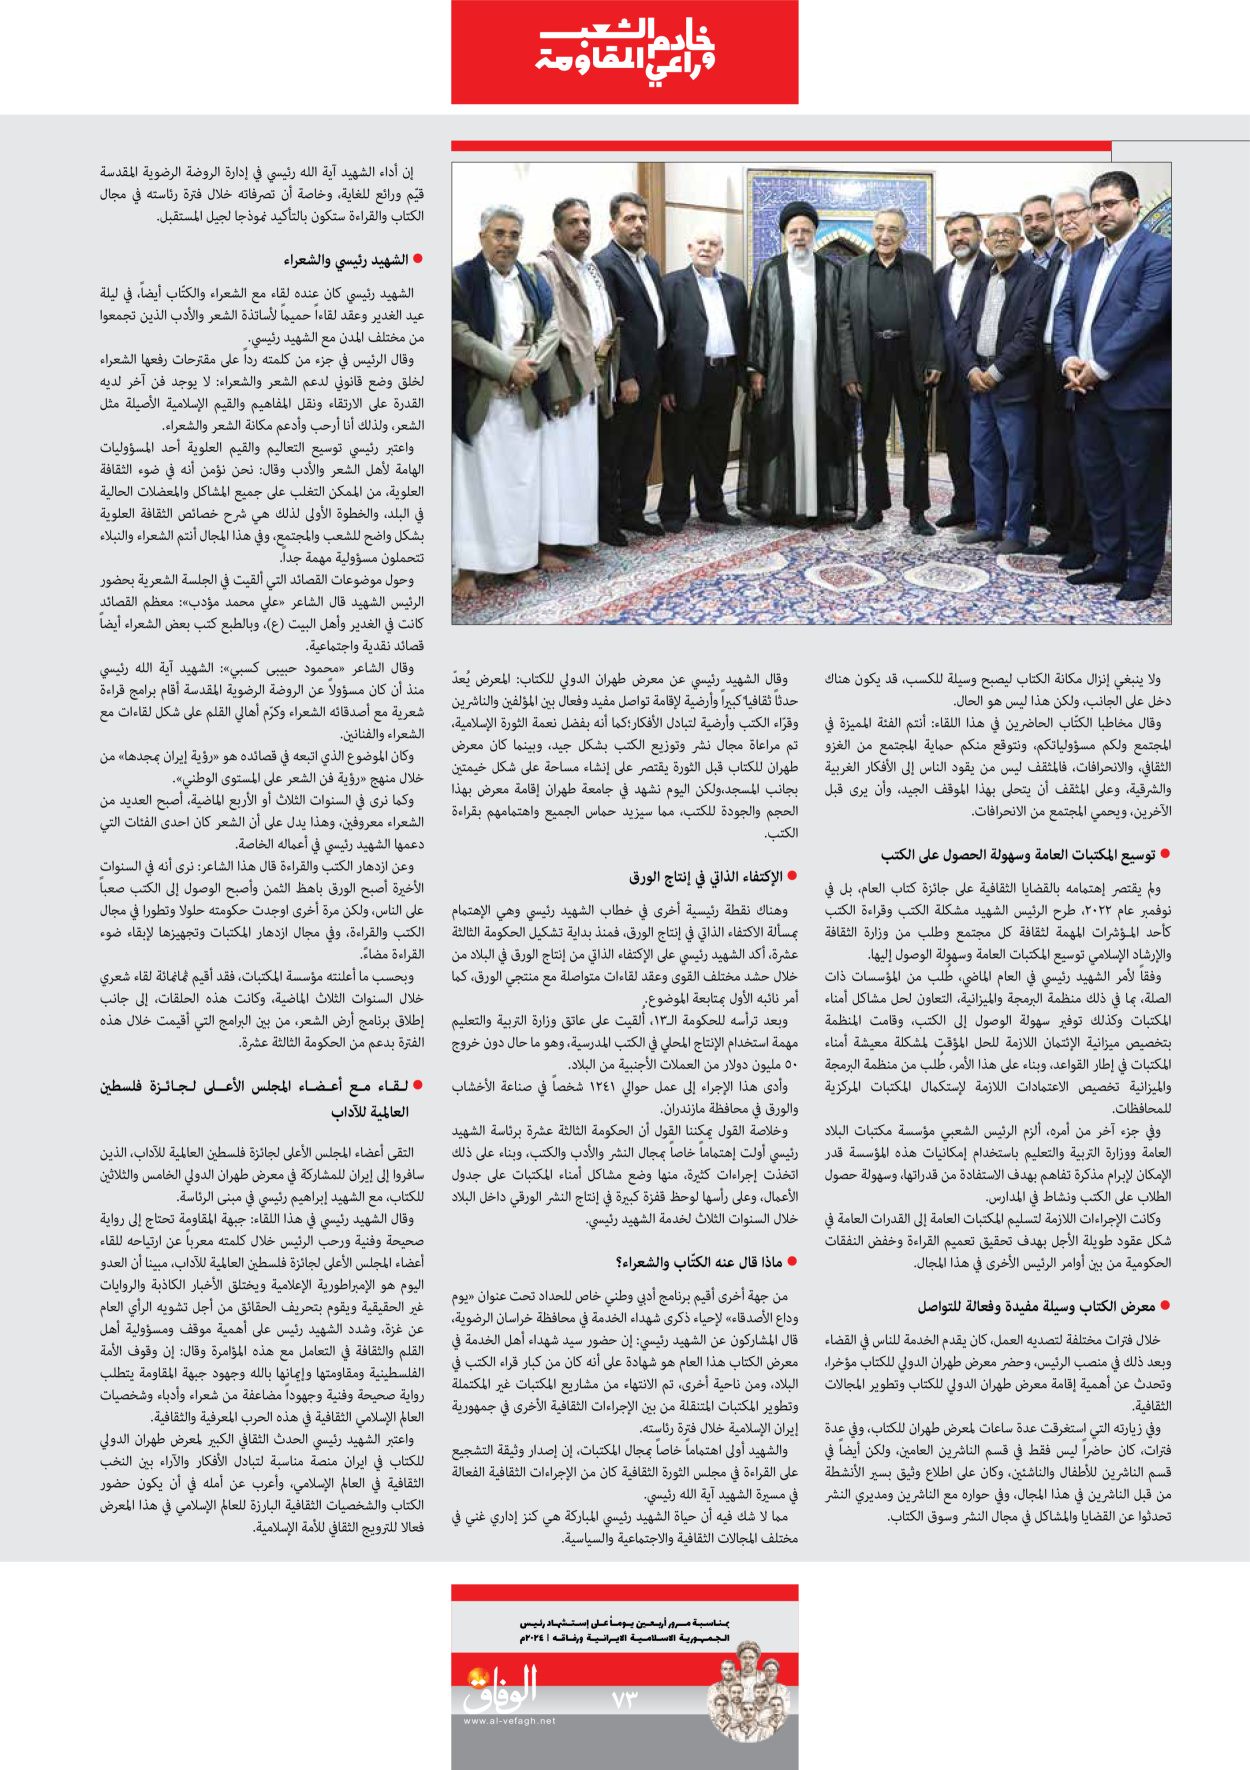 صحیفة ایران الدولیة الوفاق - ملحق ویژه نامه چهلم شهید رییسی - ٢٩ يونيو ٢٠٢٤ - الصفحة ۷۳